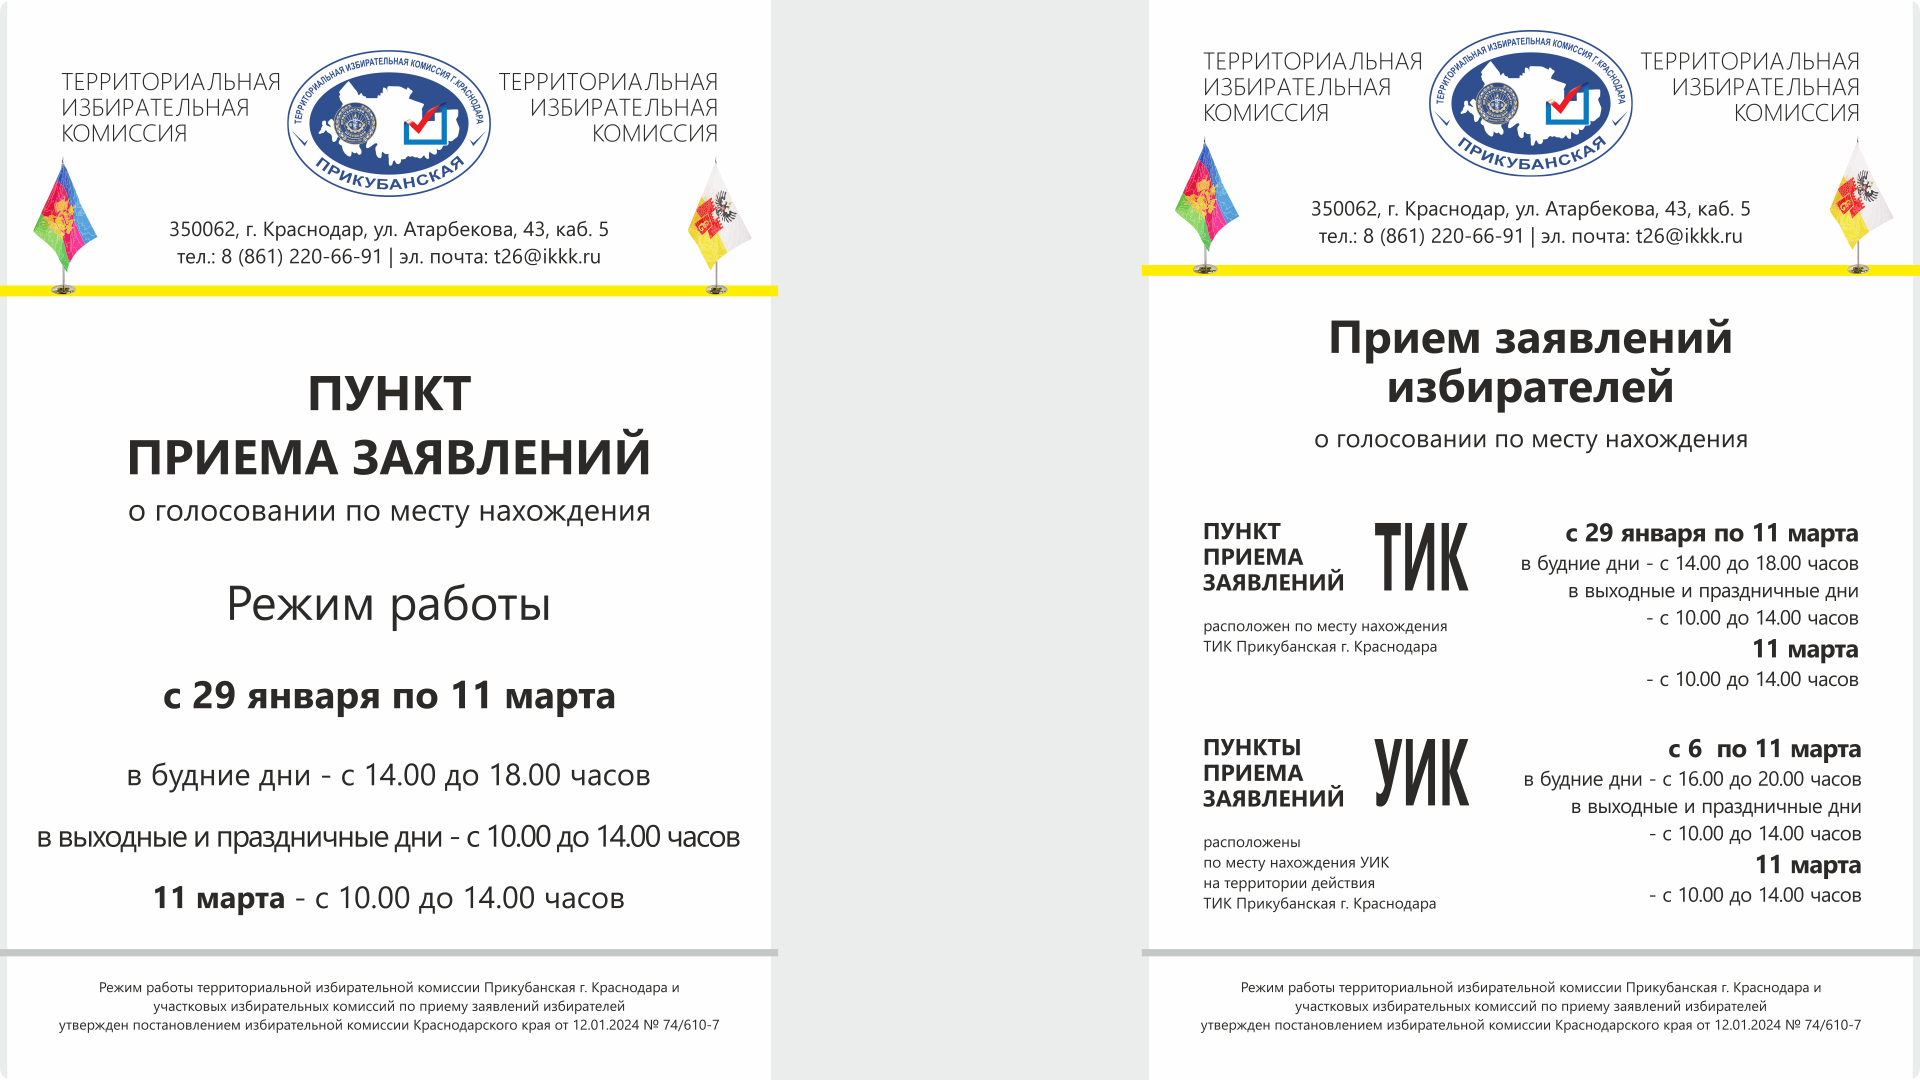 Начало работы пункта приема заявлений в территориальной избирательной комиссии Прикубанская г. Краснодара